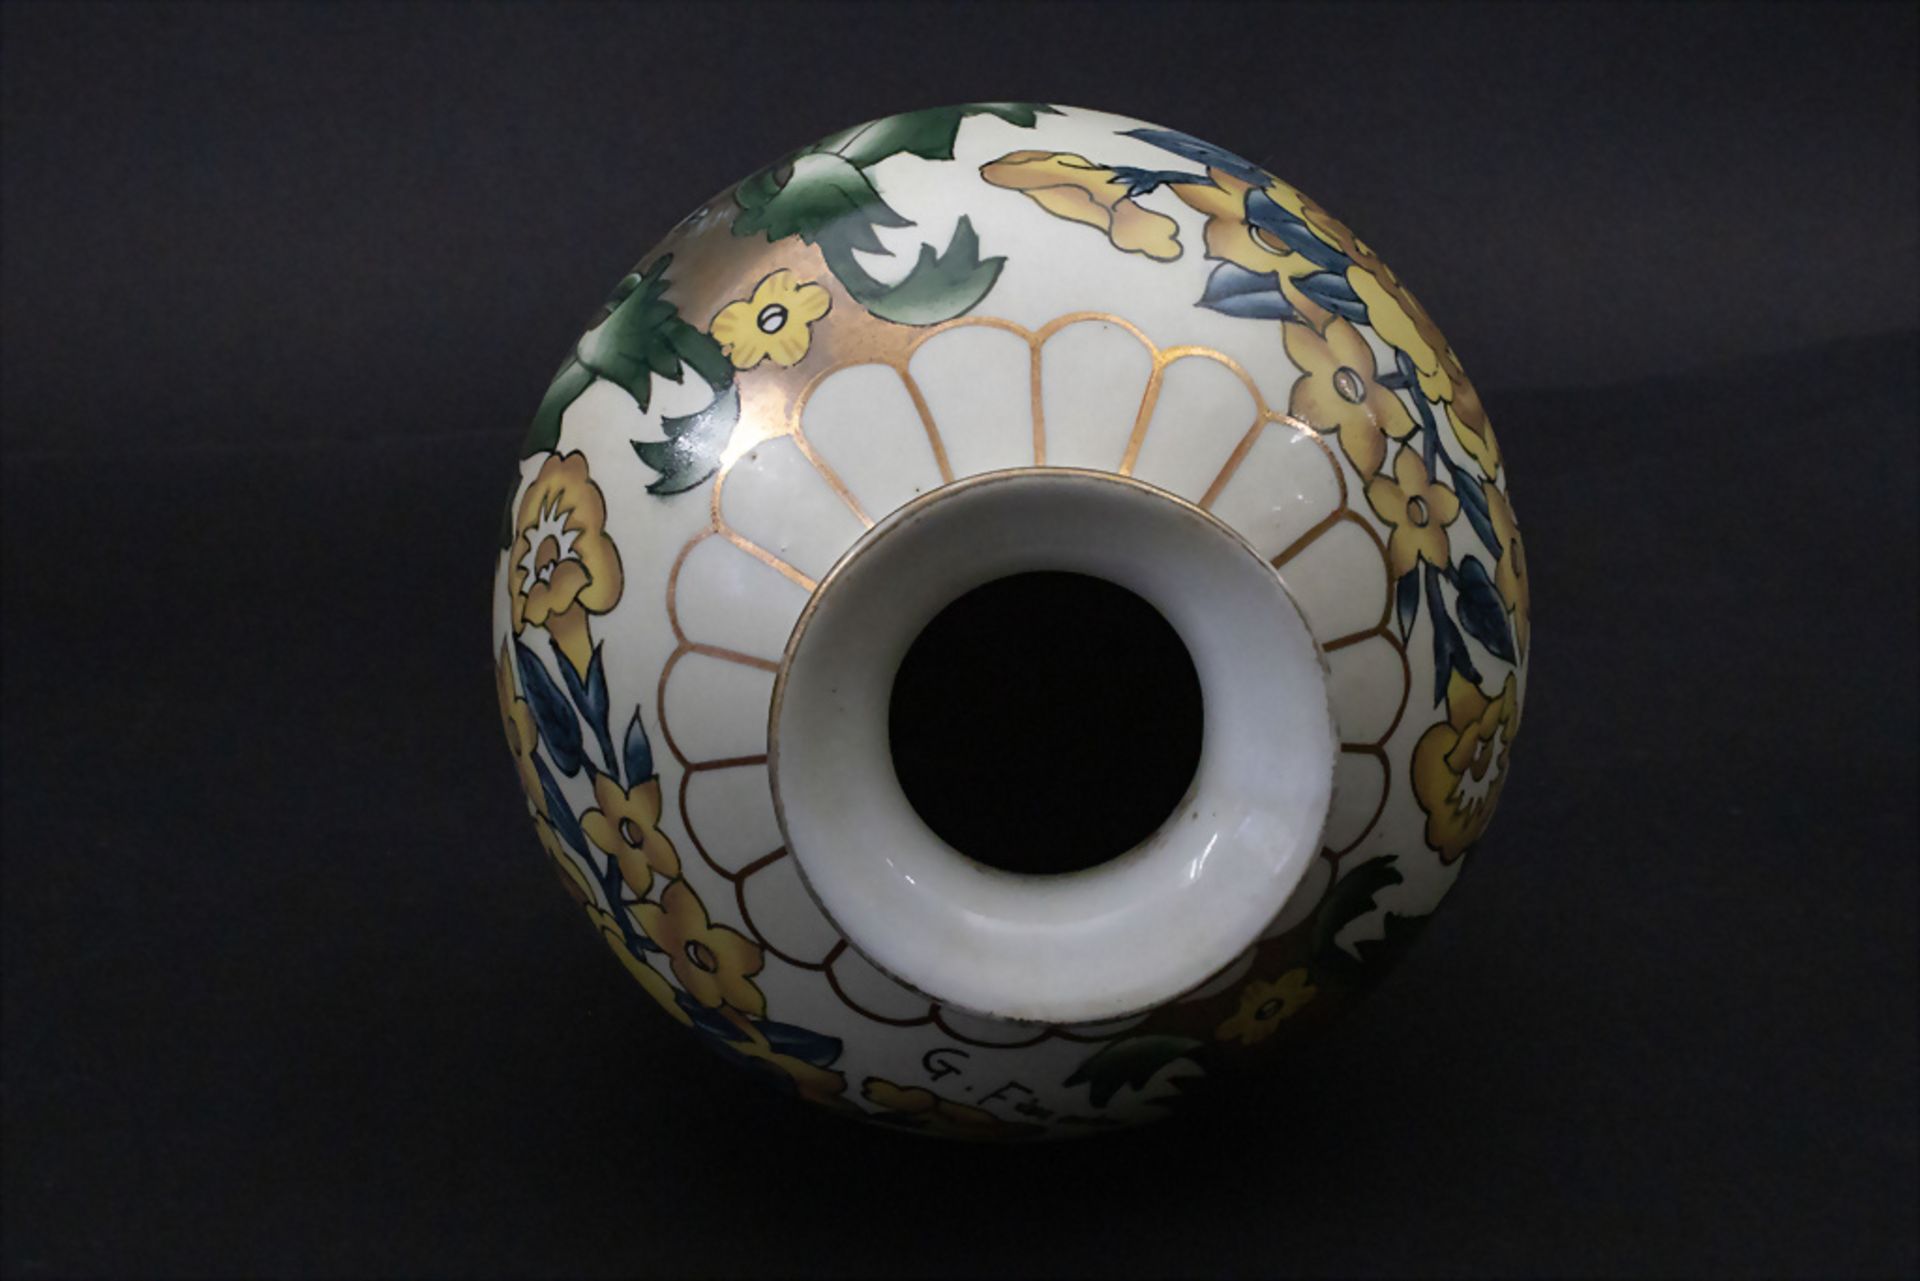 Porzellan Ziervase / A decorative porcelain vase, G. Fieravino, Italien, 20. Jh. - Bild 4 aus 5